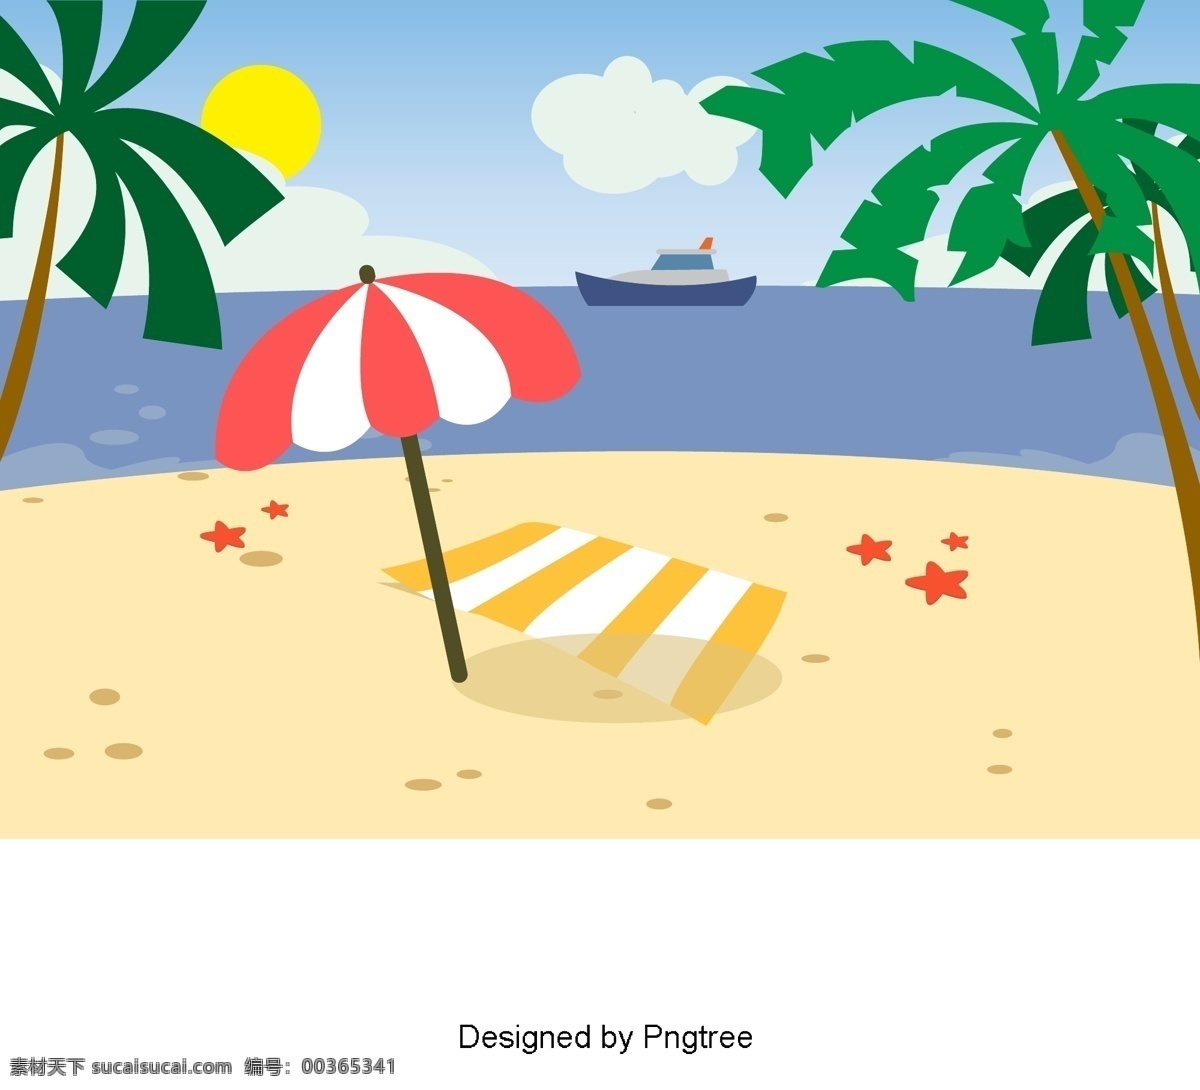 卡通 手绘 沙滩 简单 风格 海洋 派对 海滩 假日 创意 图形 画报 旅游